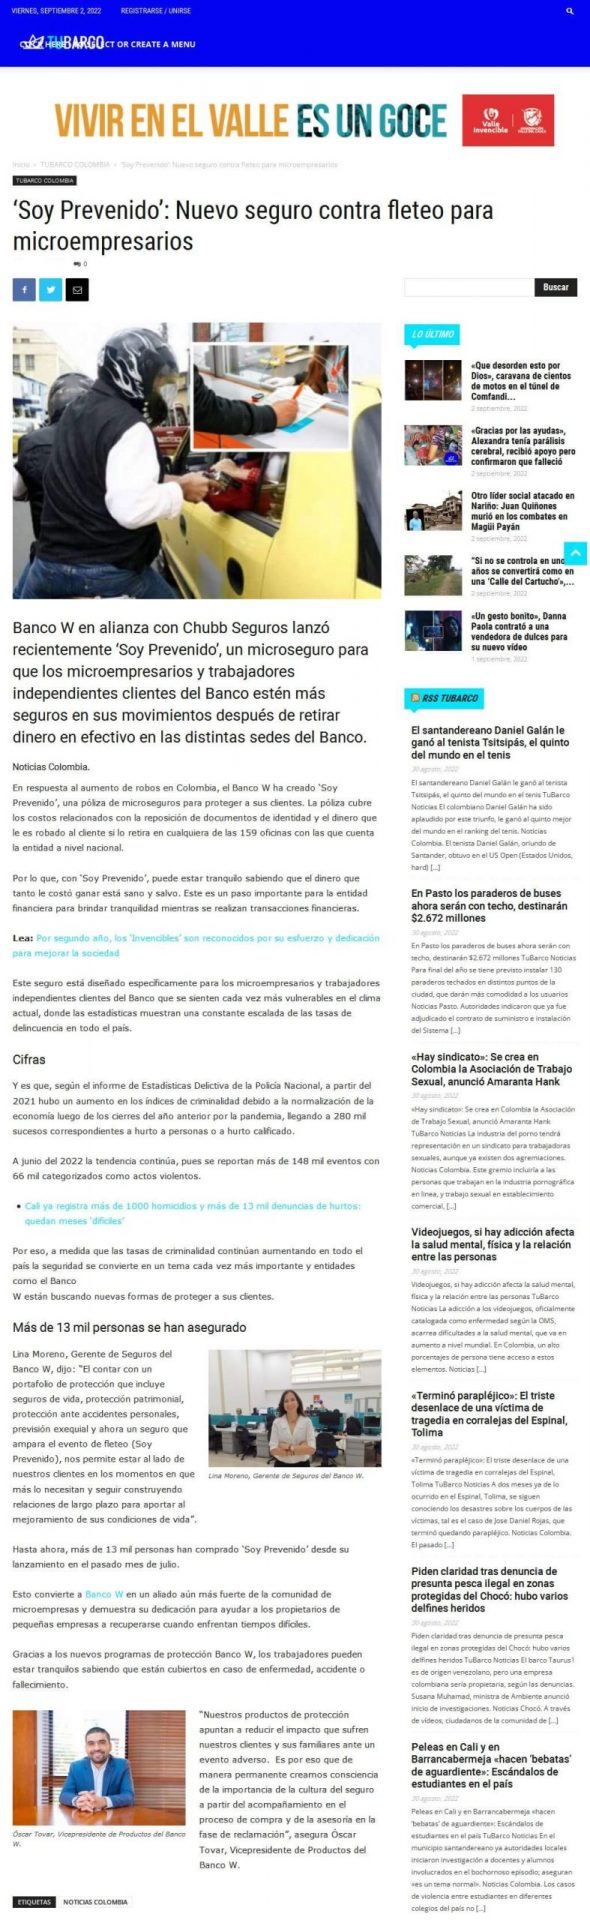 Soy prevenido’: nuevo seguro contra fleteo para microempresarios. Se destaca declaraciones de Lina Moreno y de Óscar Tovar, Gerente de Seguros y Vicepresidente de Producto y Canales del Banco W, respectivamente.